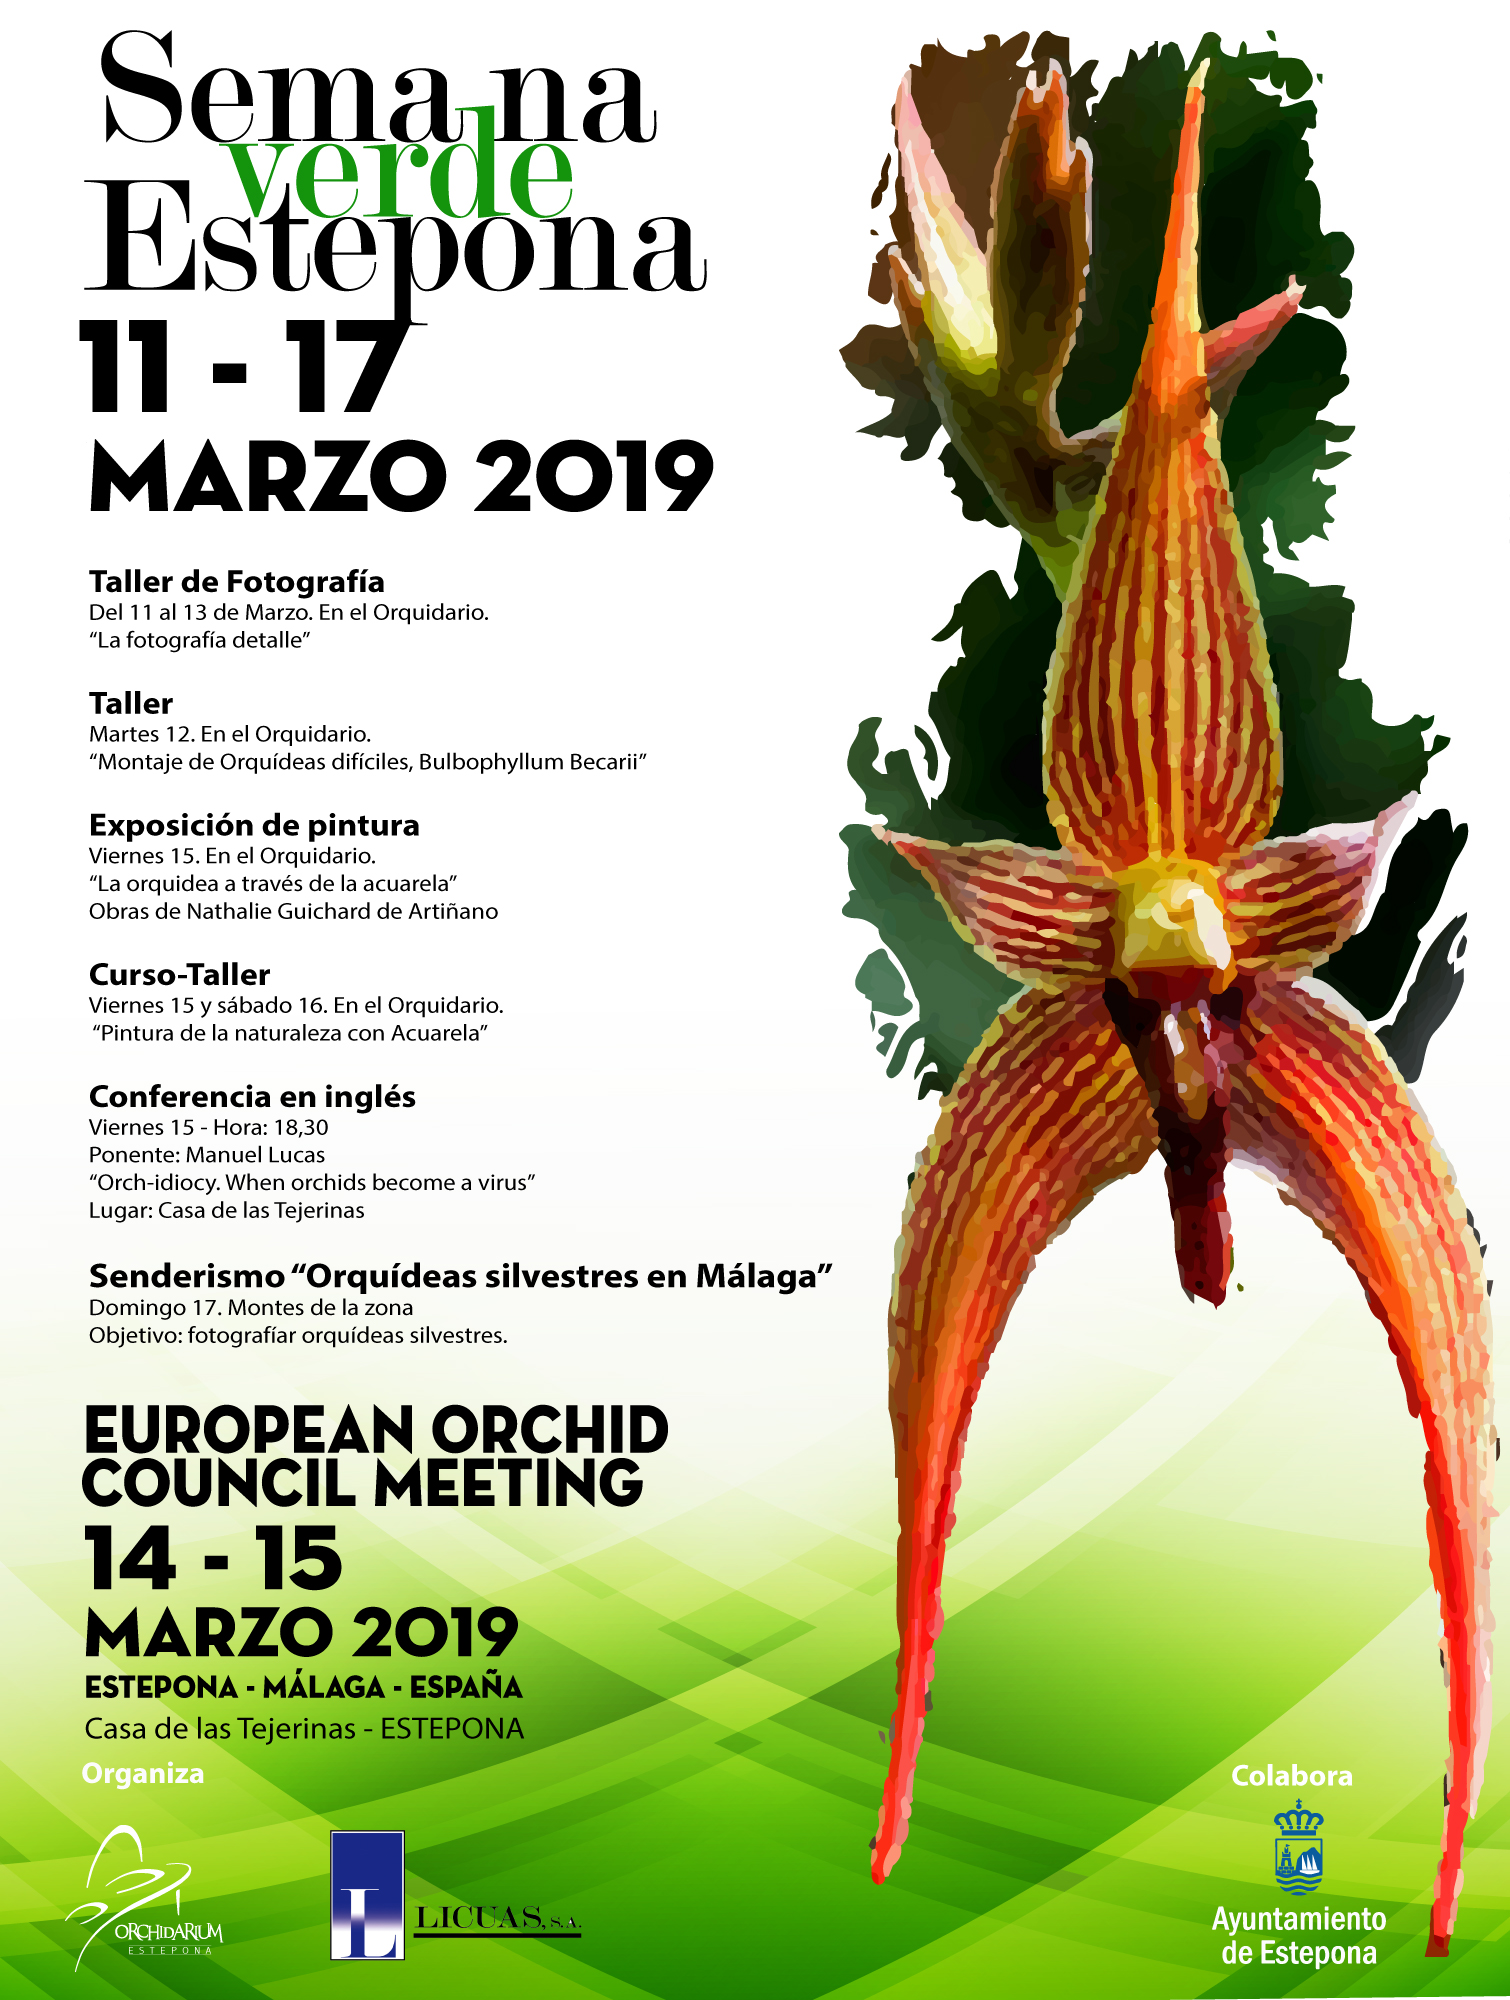 El Parque Botánico-Orquidario de Estepona será la primera sede española del Consejo Europeo de la Orquídea